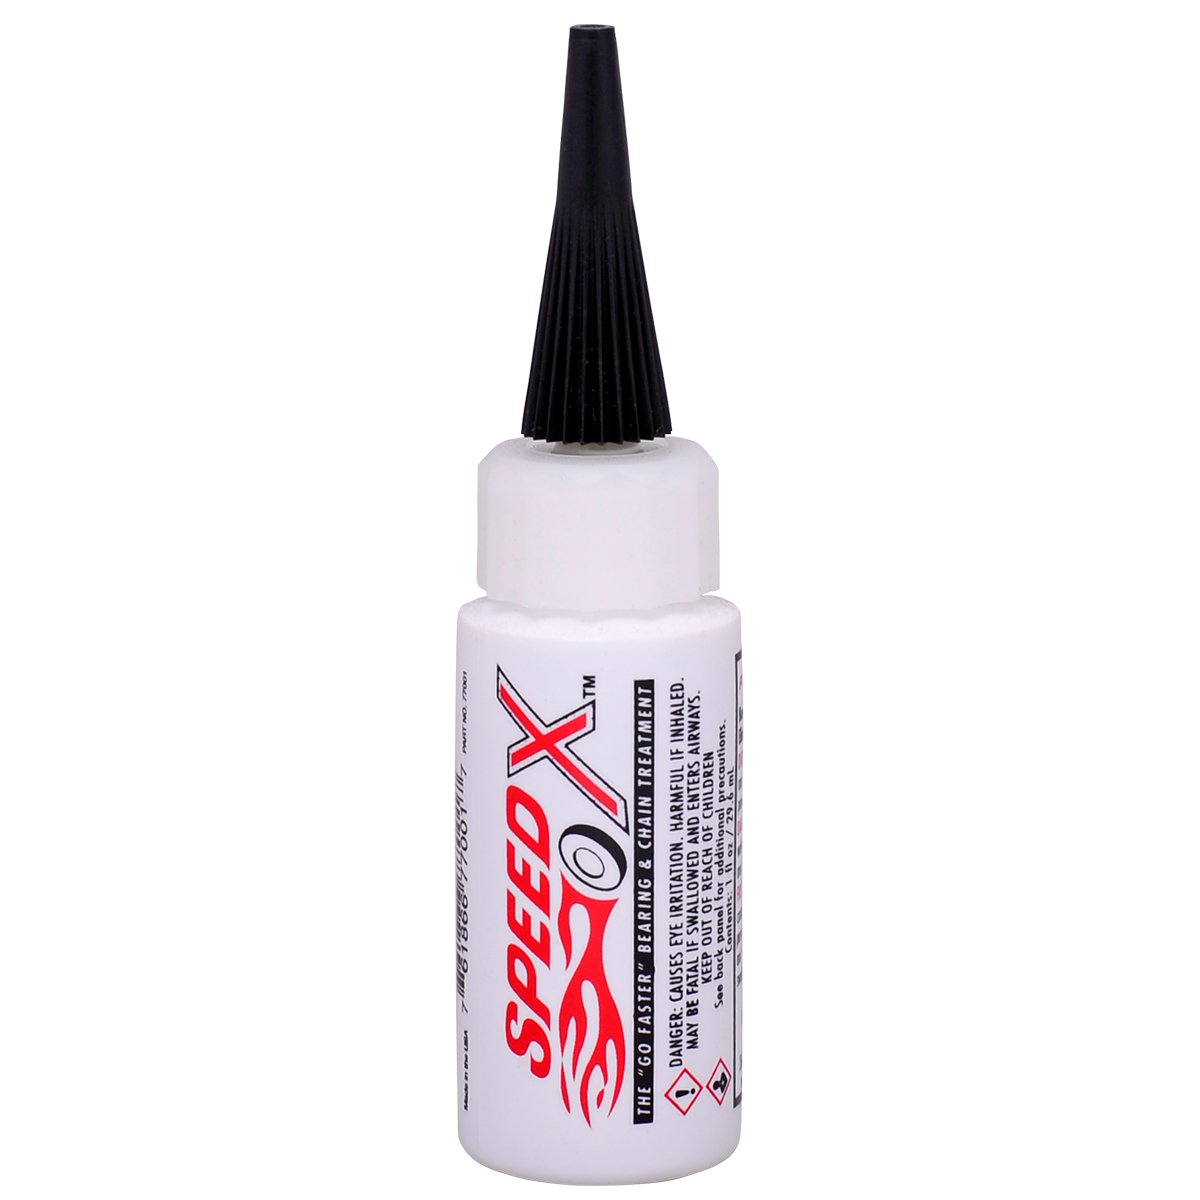 SpeedX - High Performance Bearing Lube, 1oz Bottle | 77001